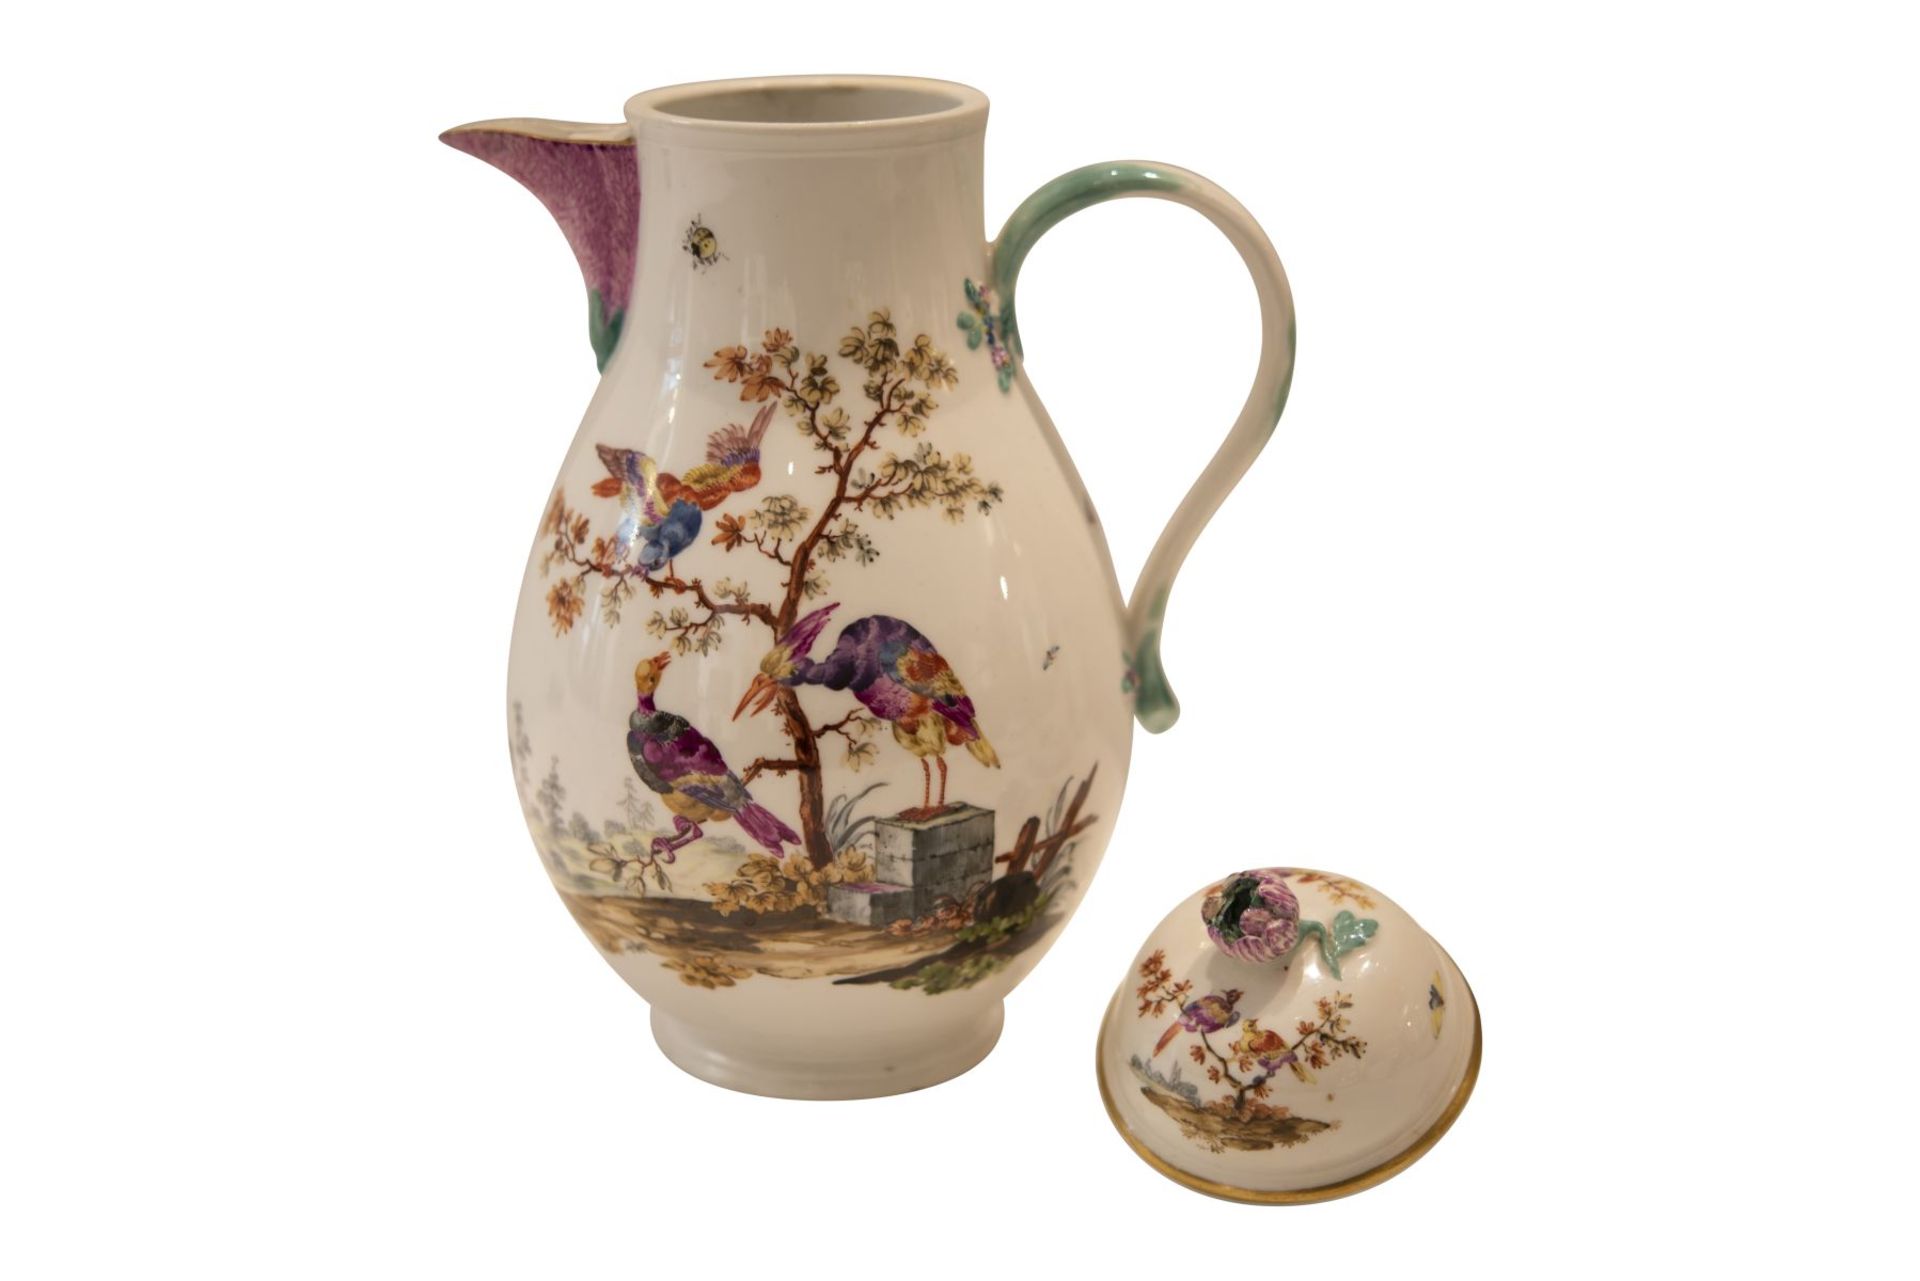 9 piece porcelain service Meissen around 1763 - Image 4 of 12